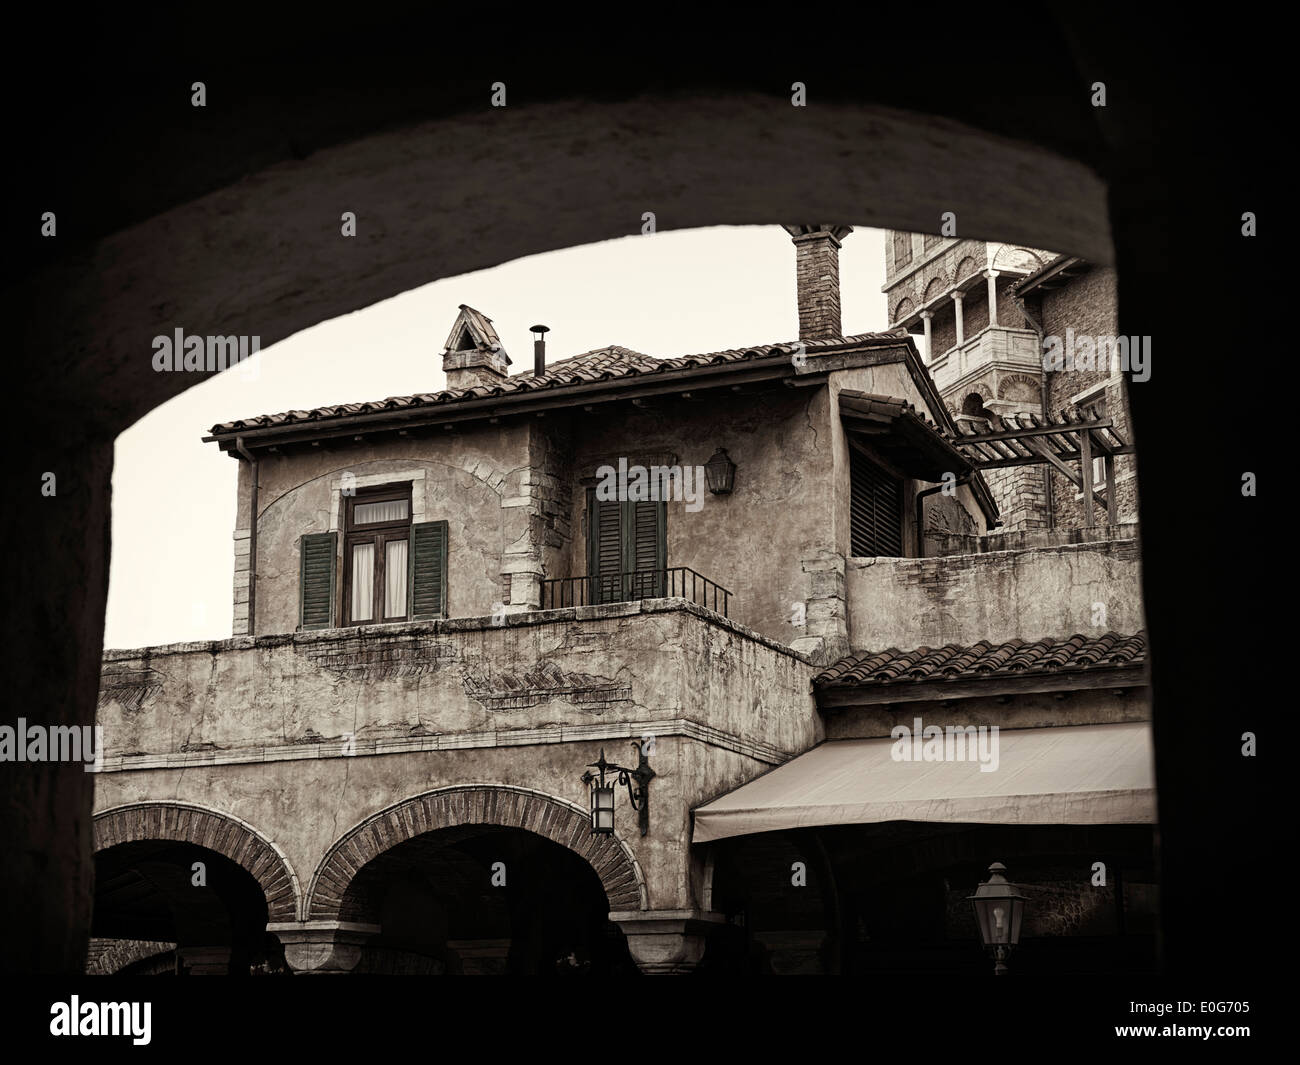 Künstlerische Foto des antiken Hauses Europa unter einem Bogen, venezianische Architektur Detail, Schwarzweiß, Sepia getönt Stockfoto